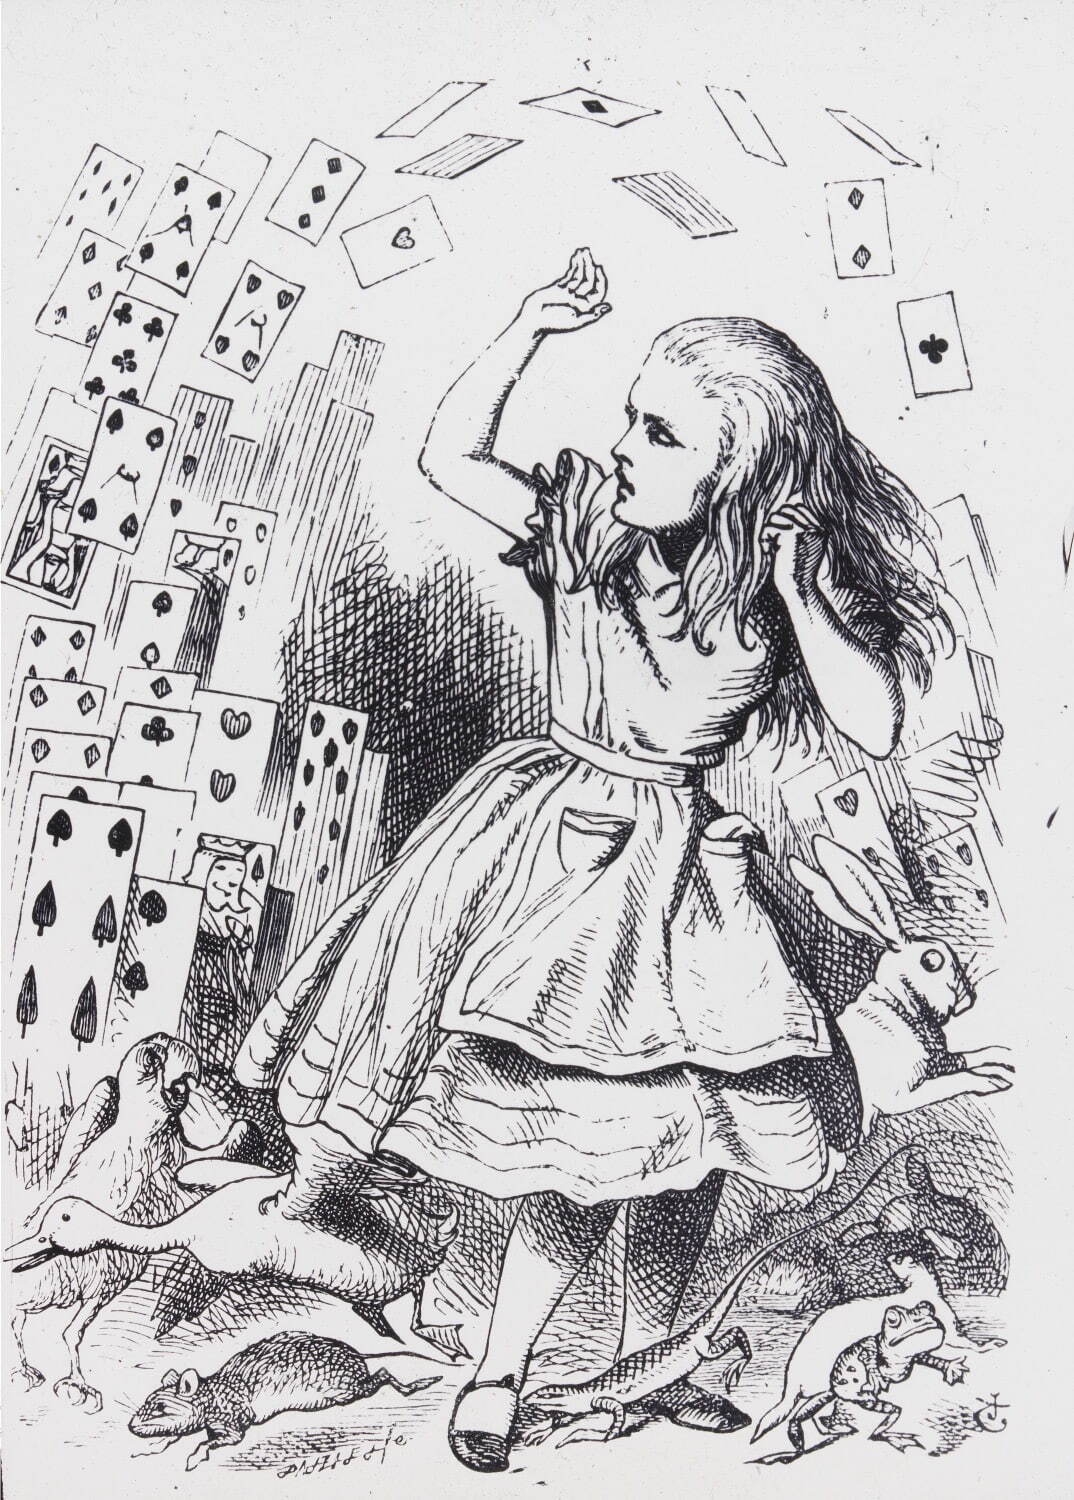 トランプに襲われるアリス 『不思議の国のアリス』より ジョン・テニエル画 幻灯機用スライド 1898~1900年
© Victoria and Albert Museum, London